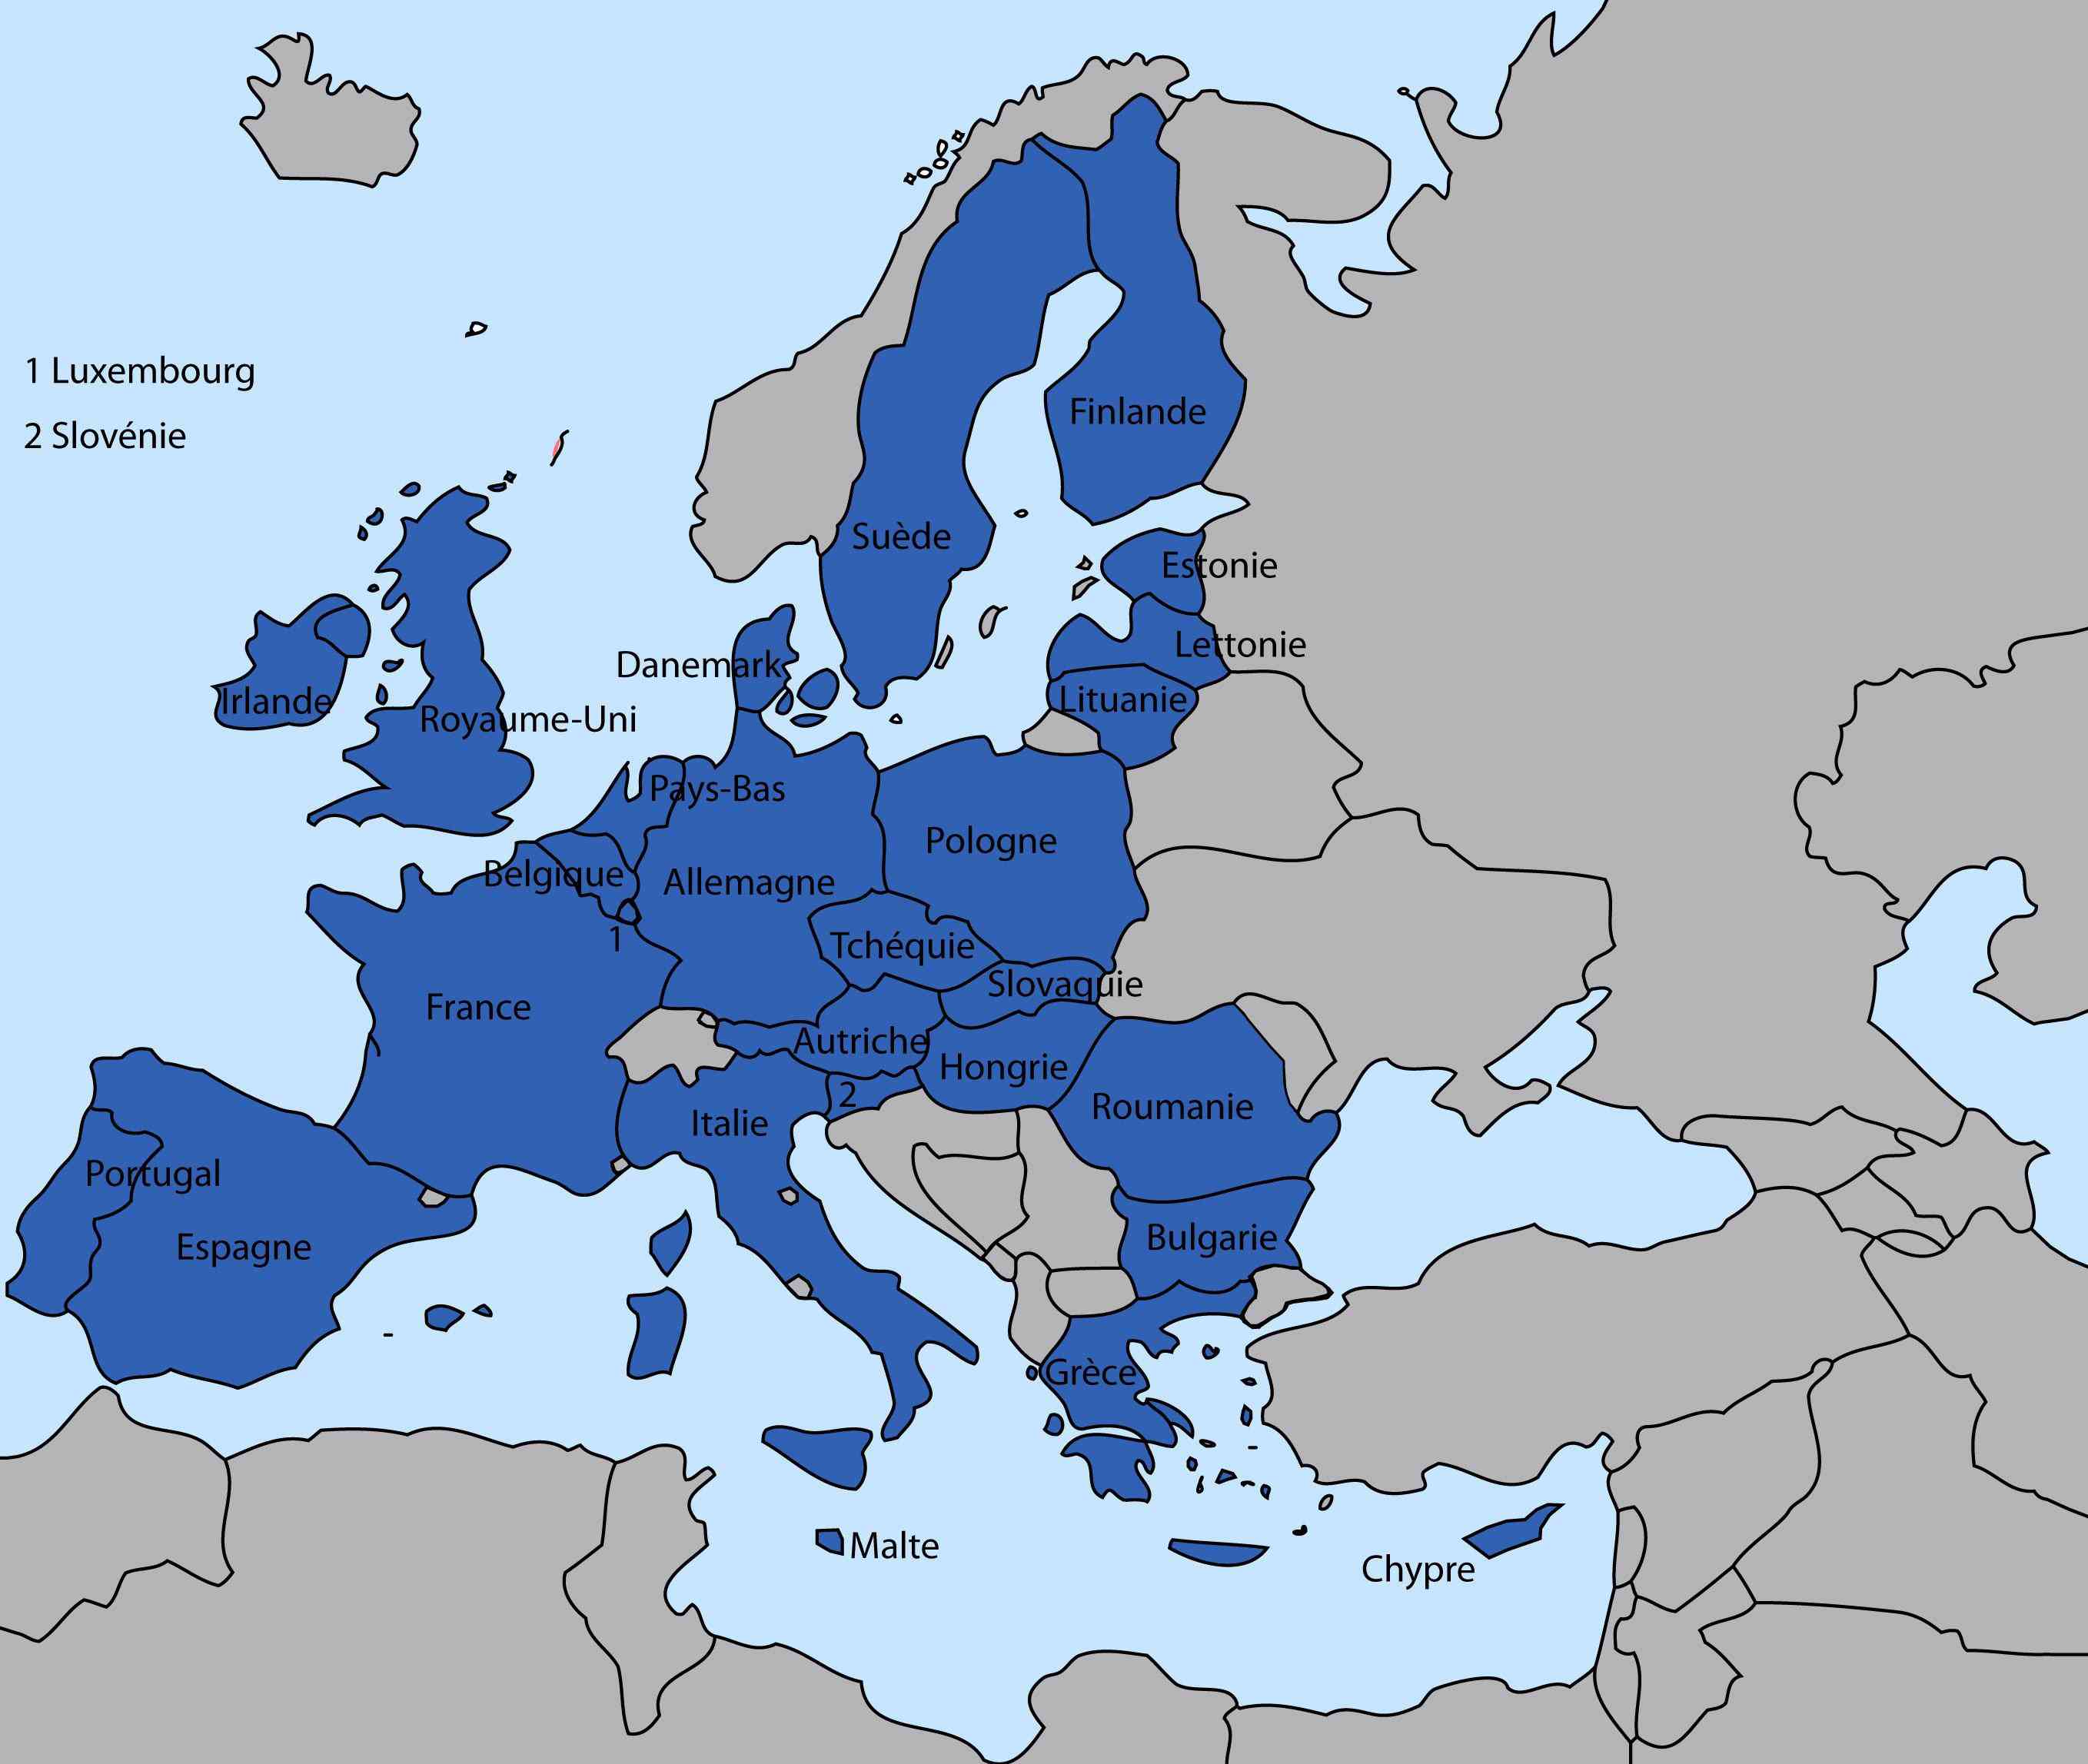 europe carte avec symboles des pays